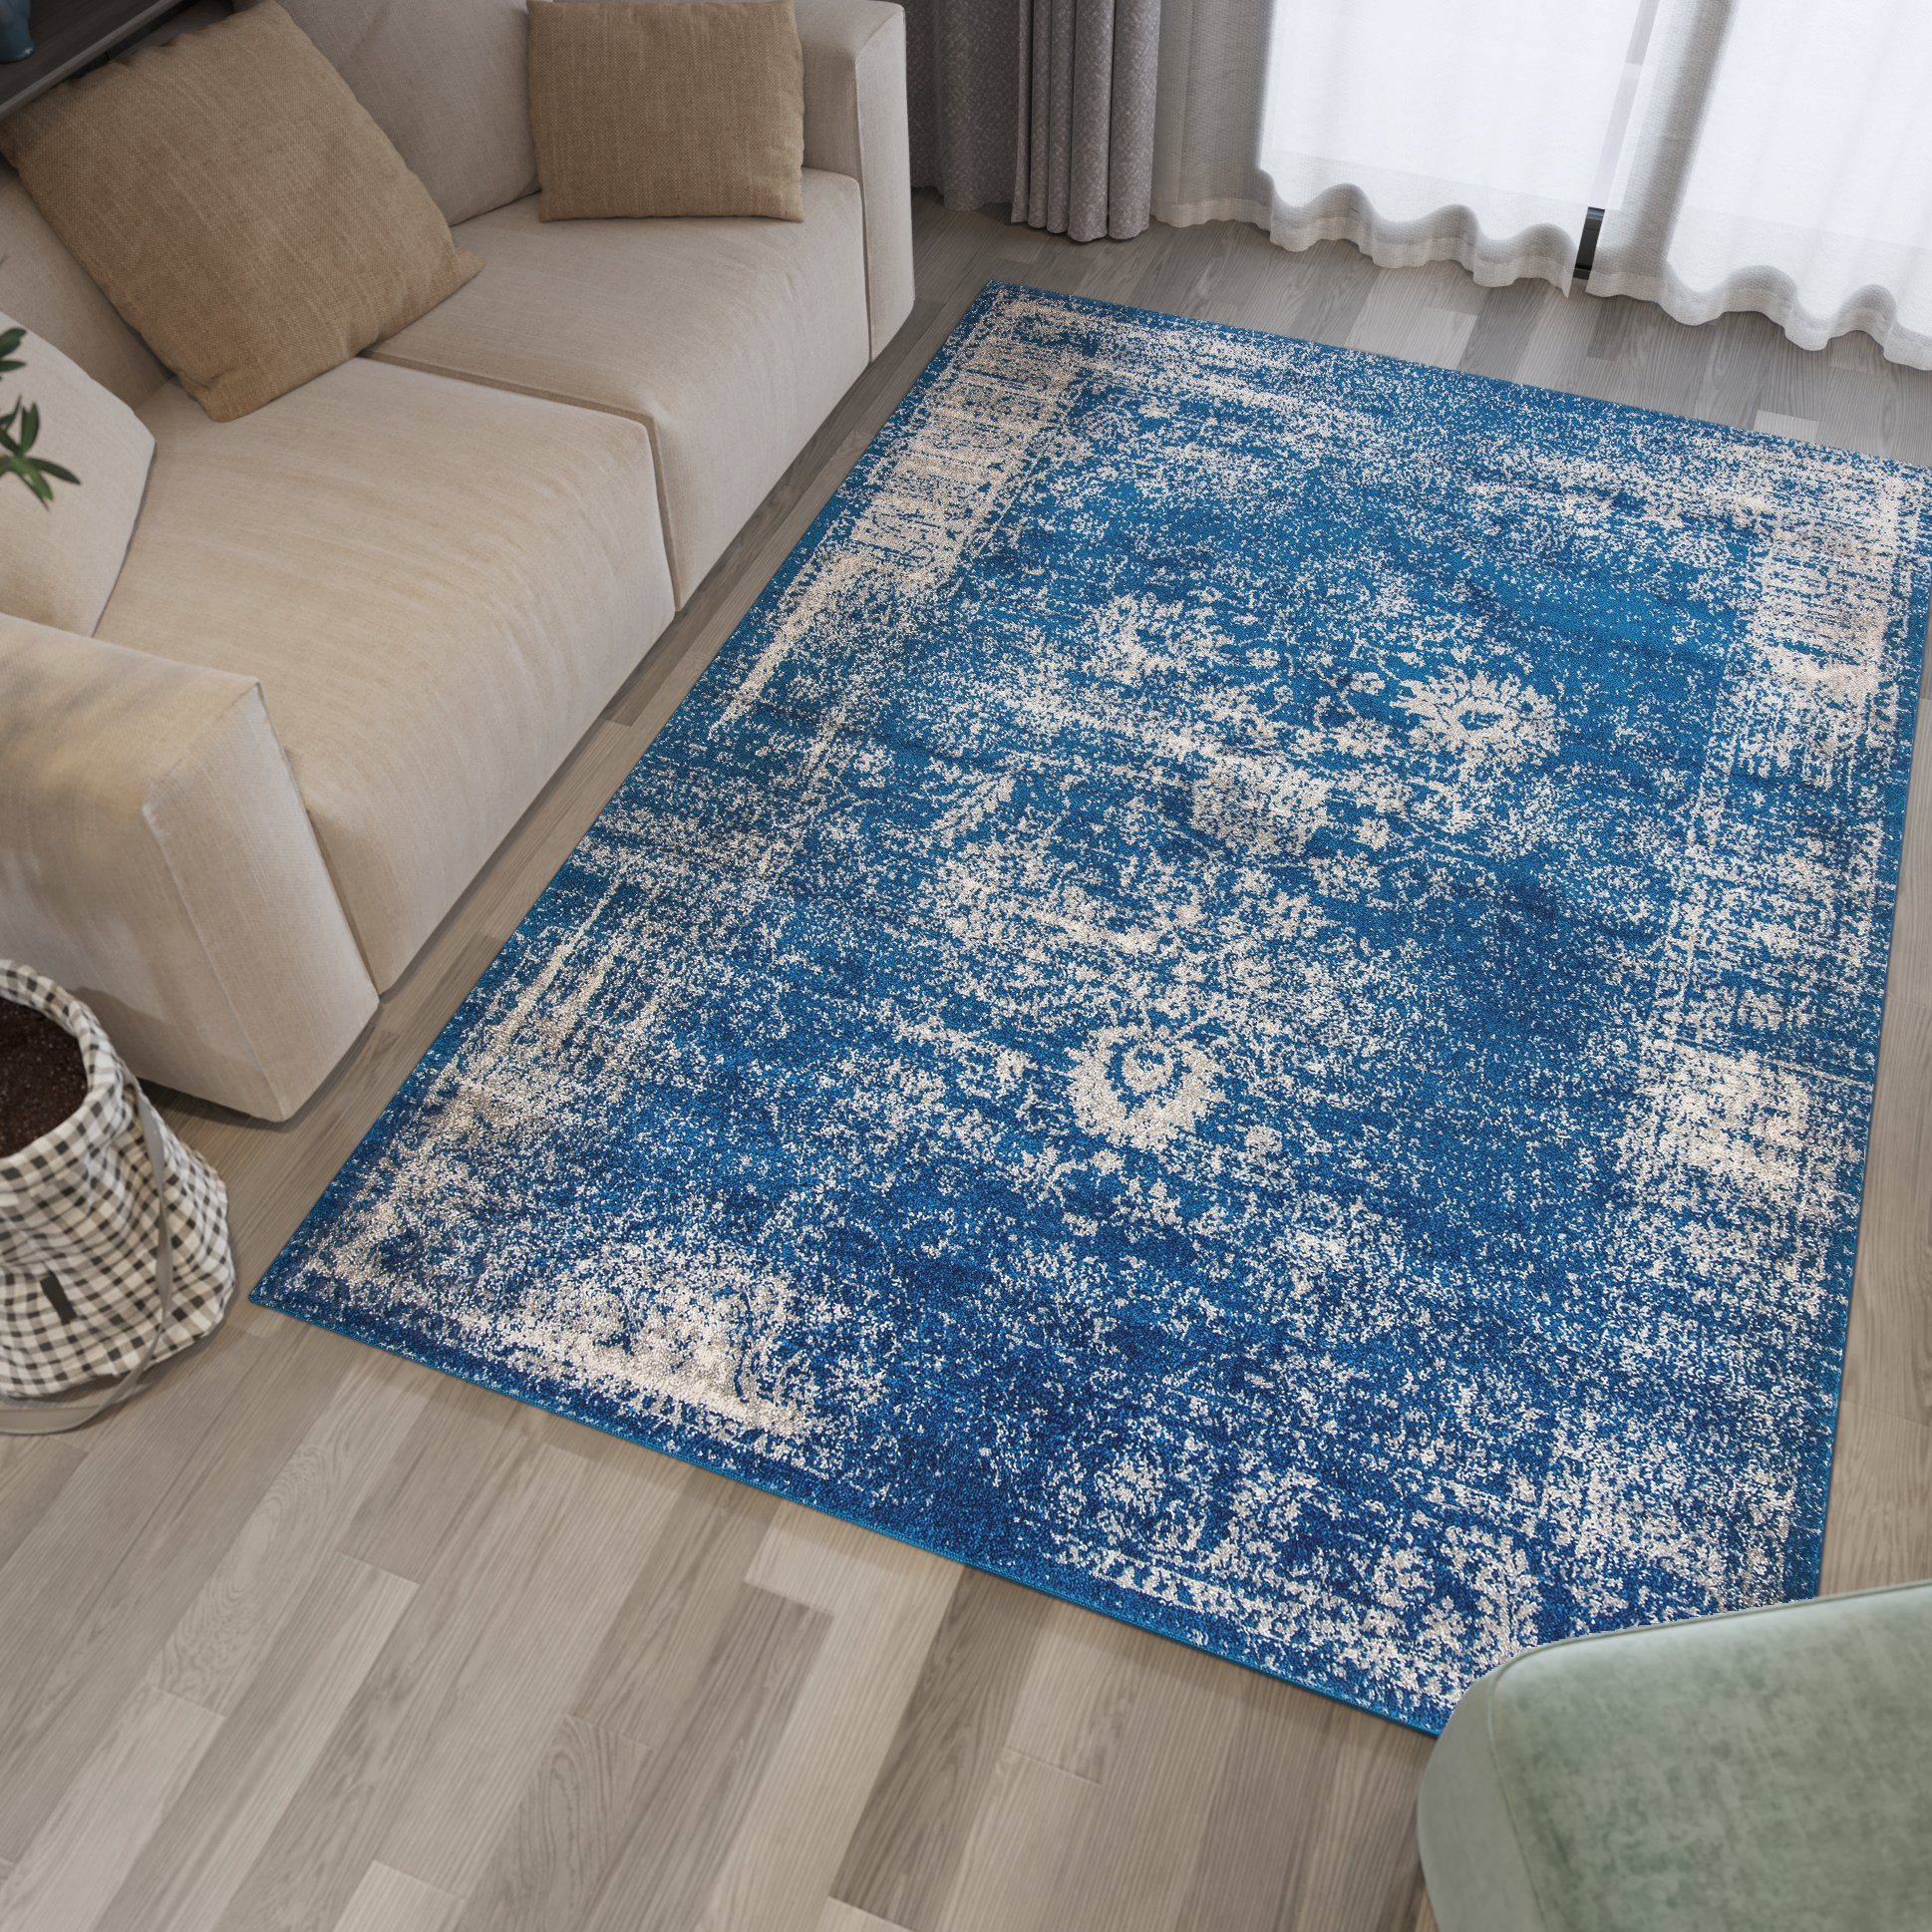 Designteppich Vintage Teppich für Wohnzimmer - Vintage Look - Blau, Mazovia, 80 x 200 cm, Vintage, Höhe 8 mm, Kurzflor - niedrige Florhöhe Blau / H183A